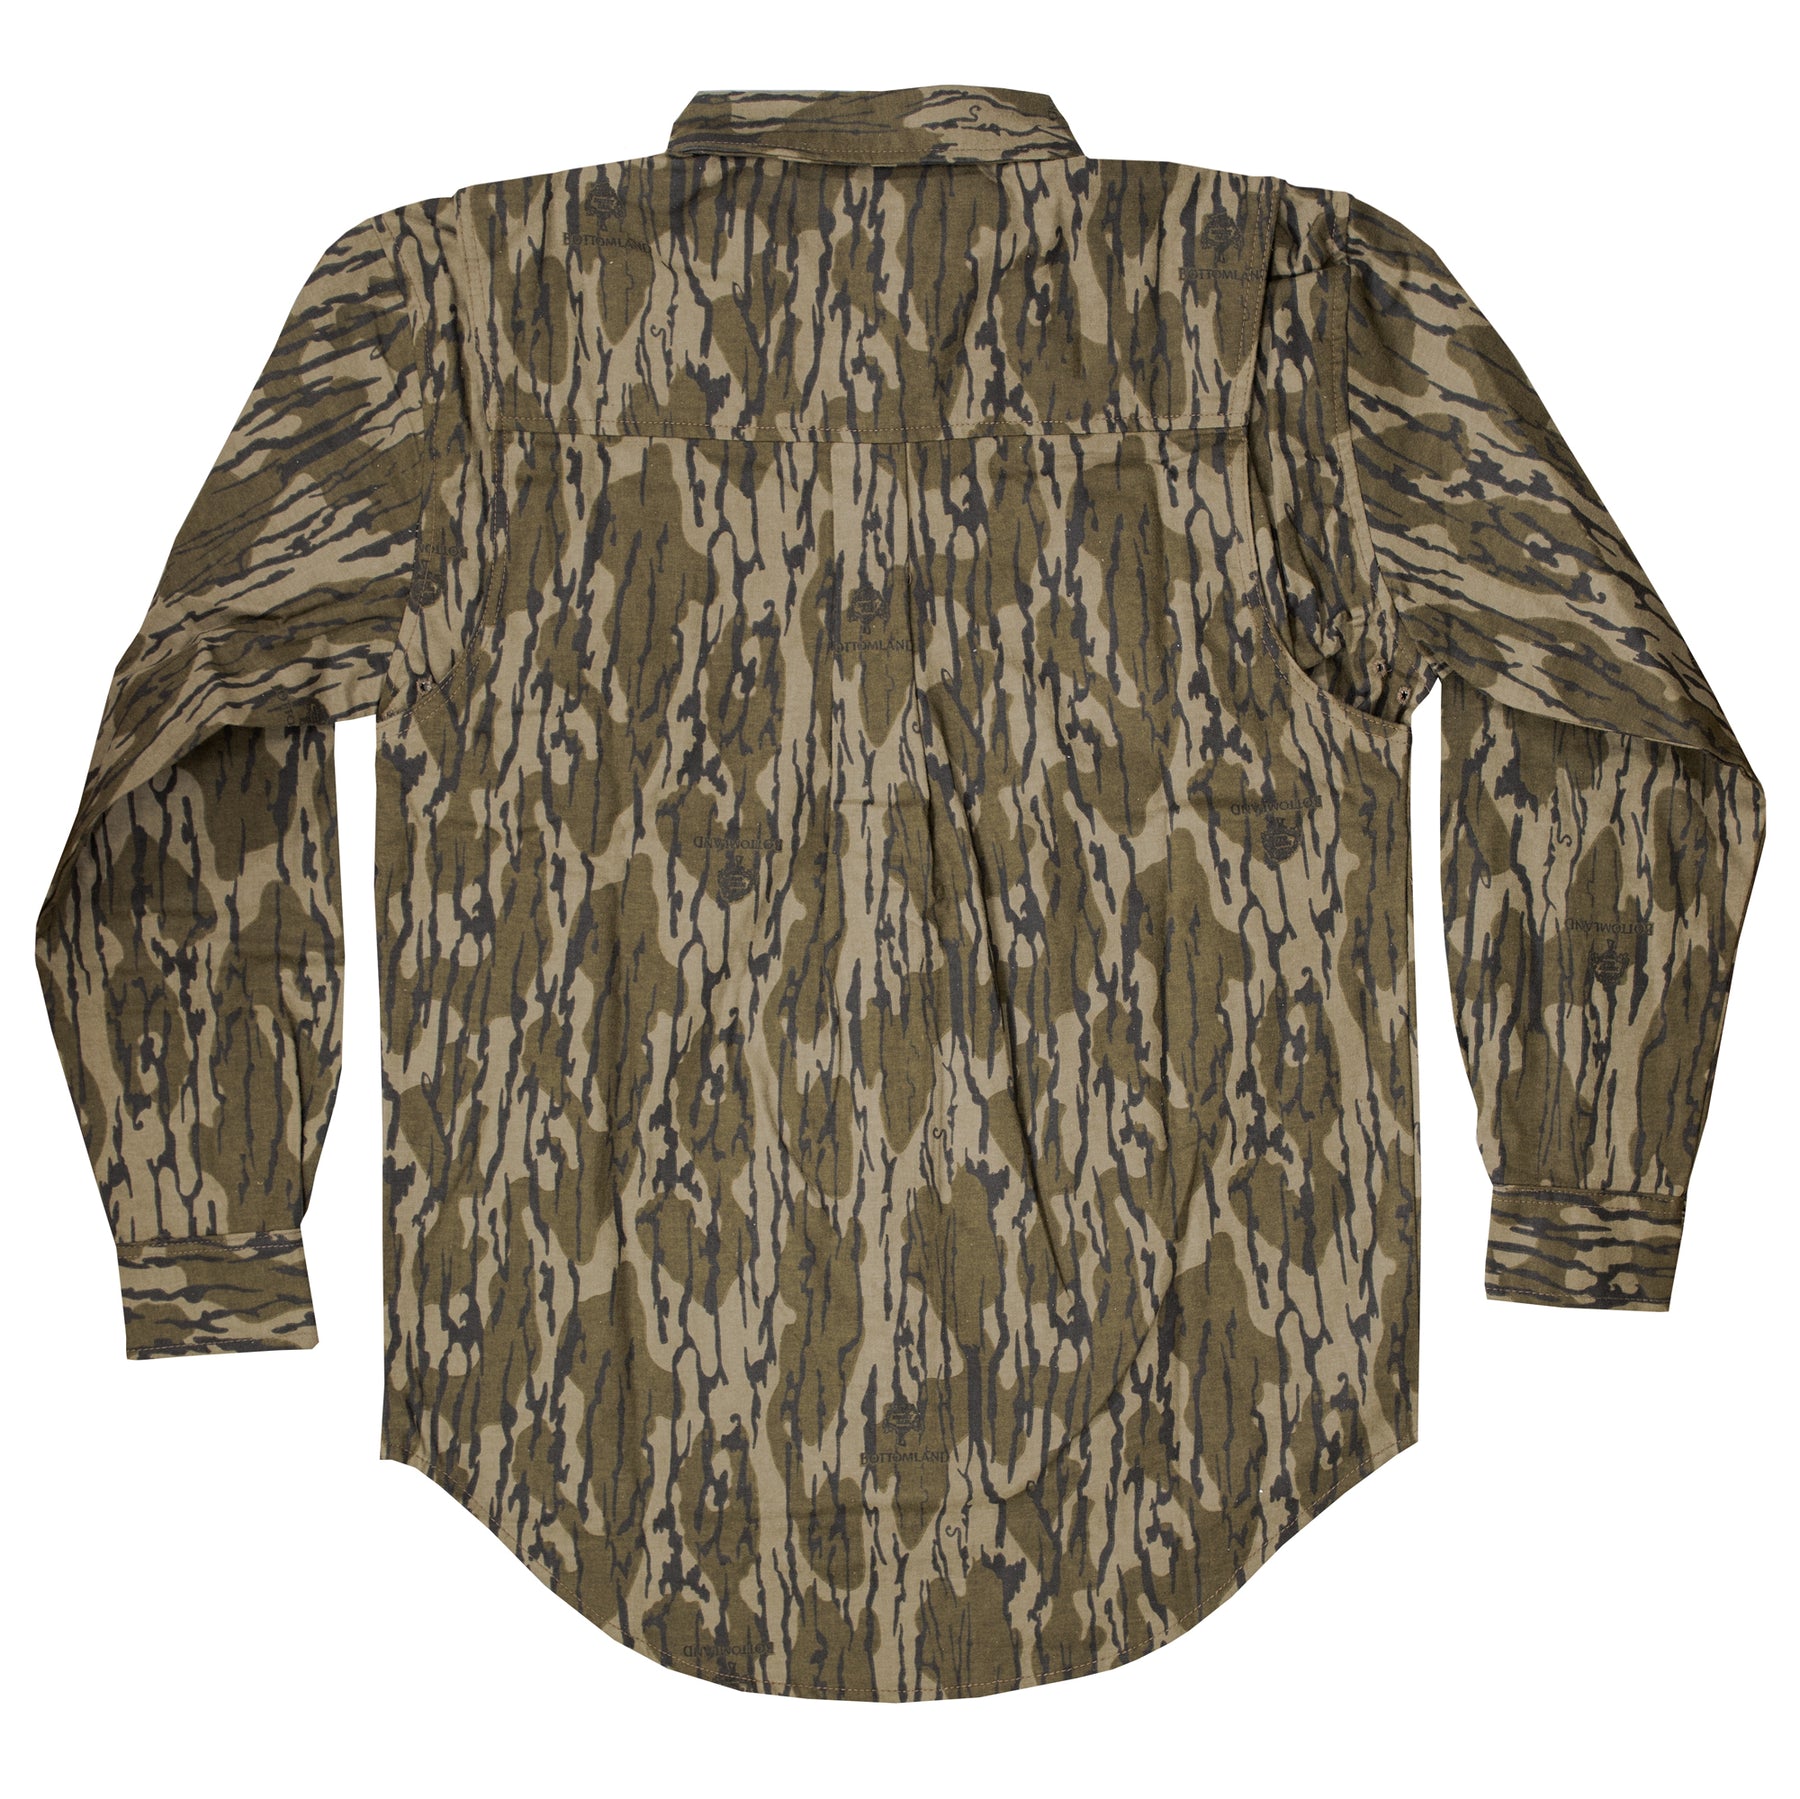 Cotton Mill Chamois Shirt – The Mossy Oak Store